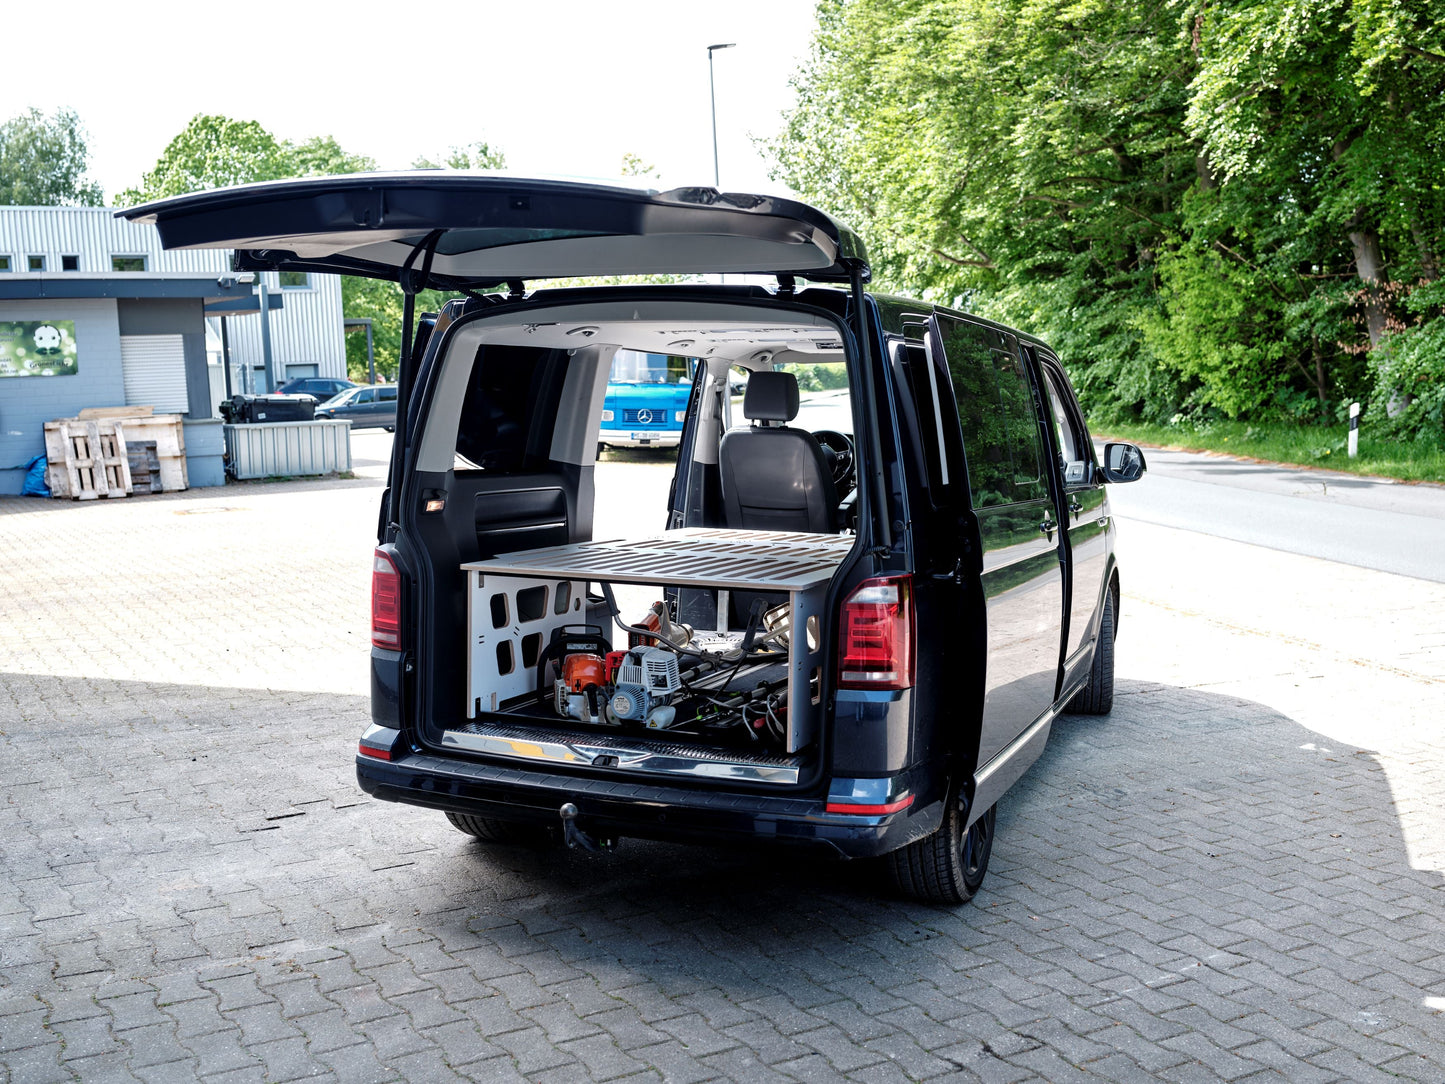 Sleeping system CoSlee-Van, fits in almost every van!